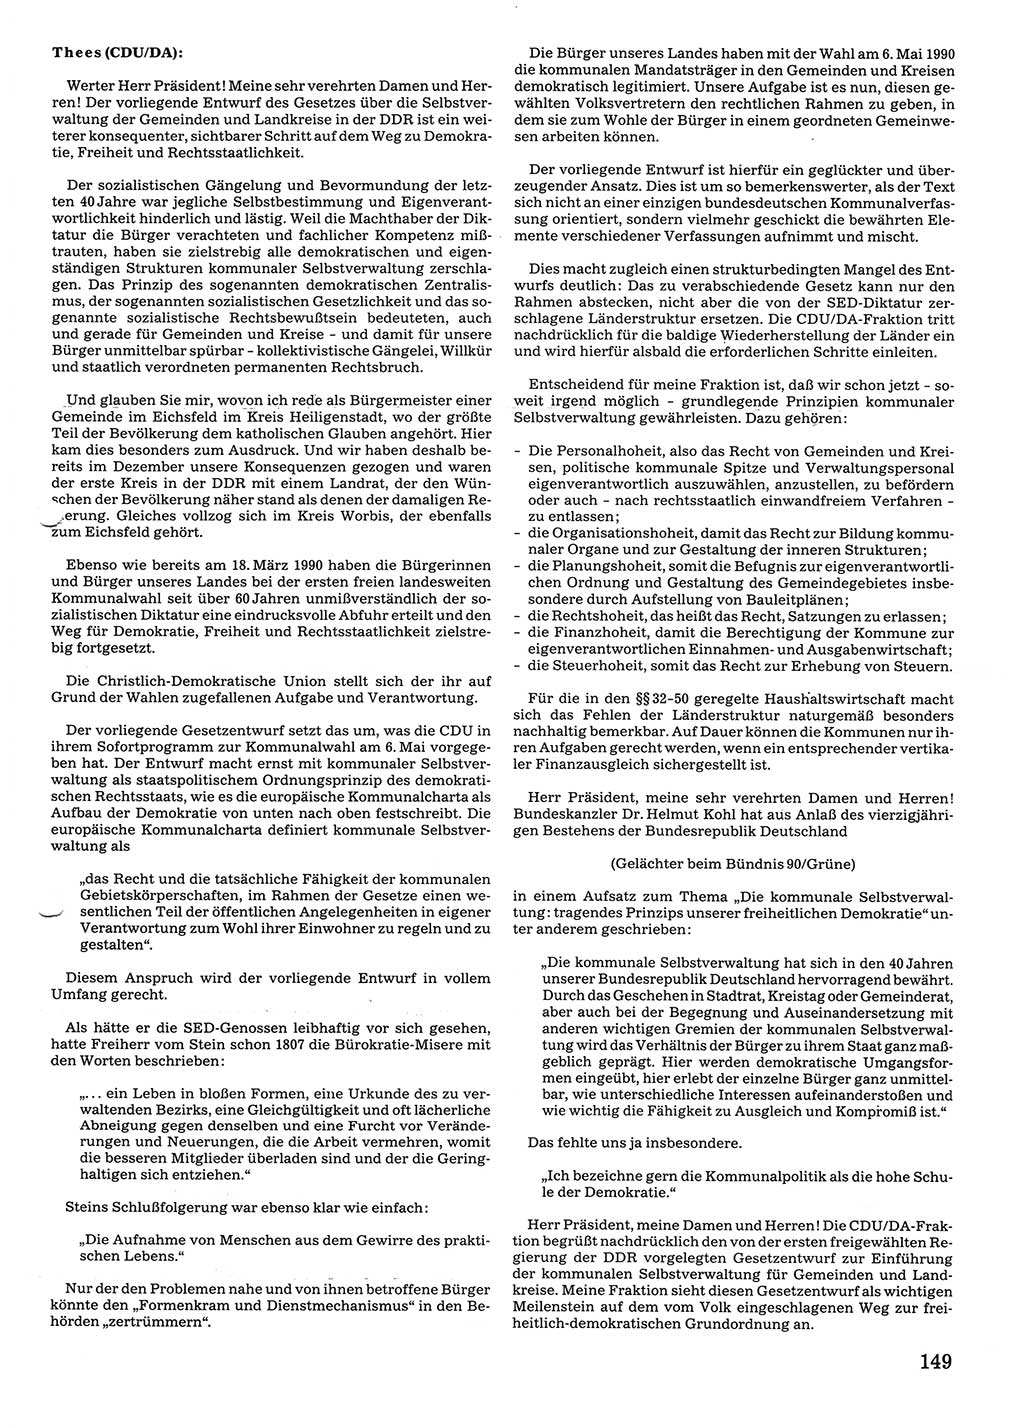 Tagungen der Volkskammer (VK) der Deutschen Demokratischen Republik (DDR), 10. Wahlperiode 1990, Seite 149 (VK. DDR 10. WP. 1990, Prot. Tg. 1-38, 5.4.-2.10.1990, S. 149)